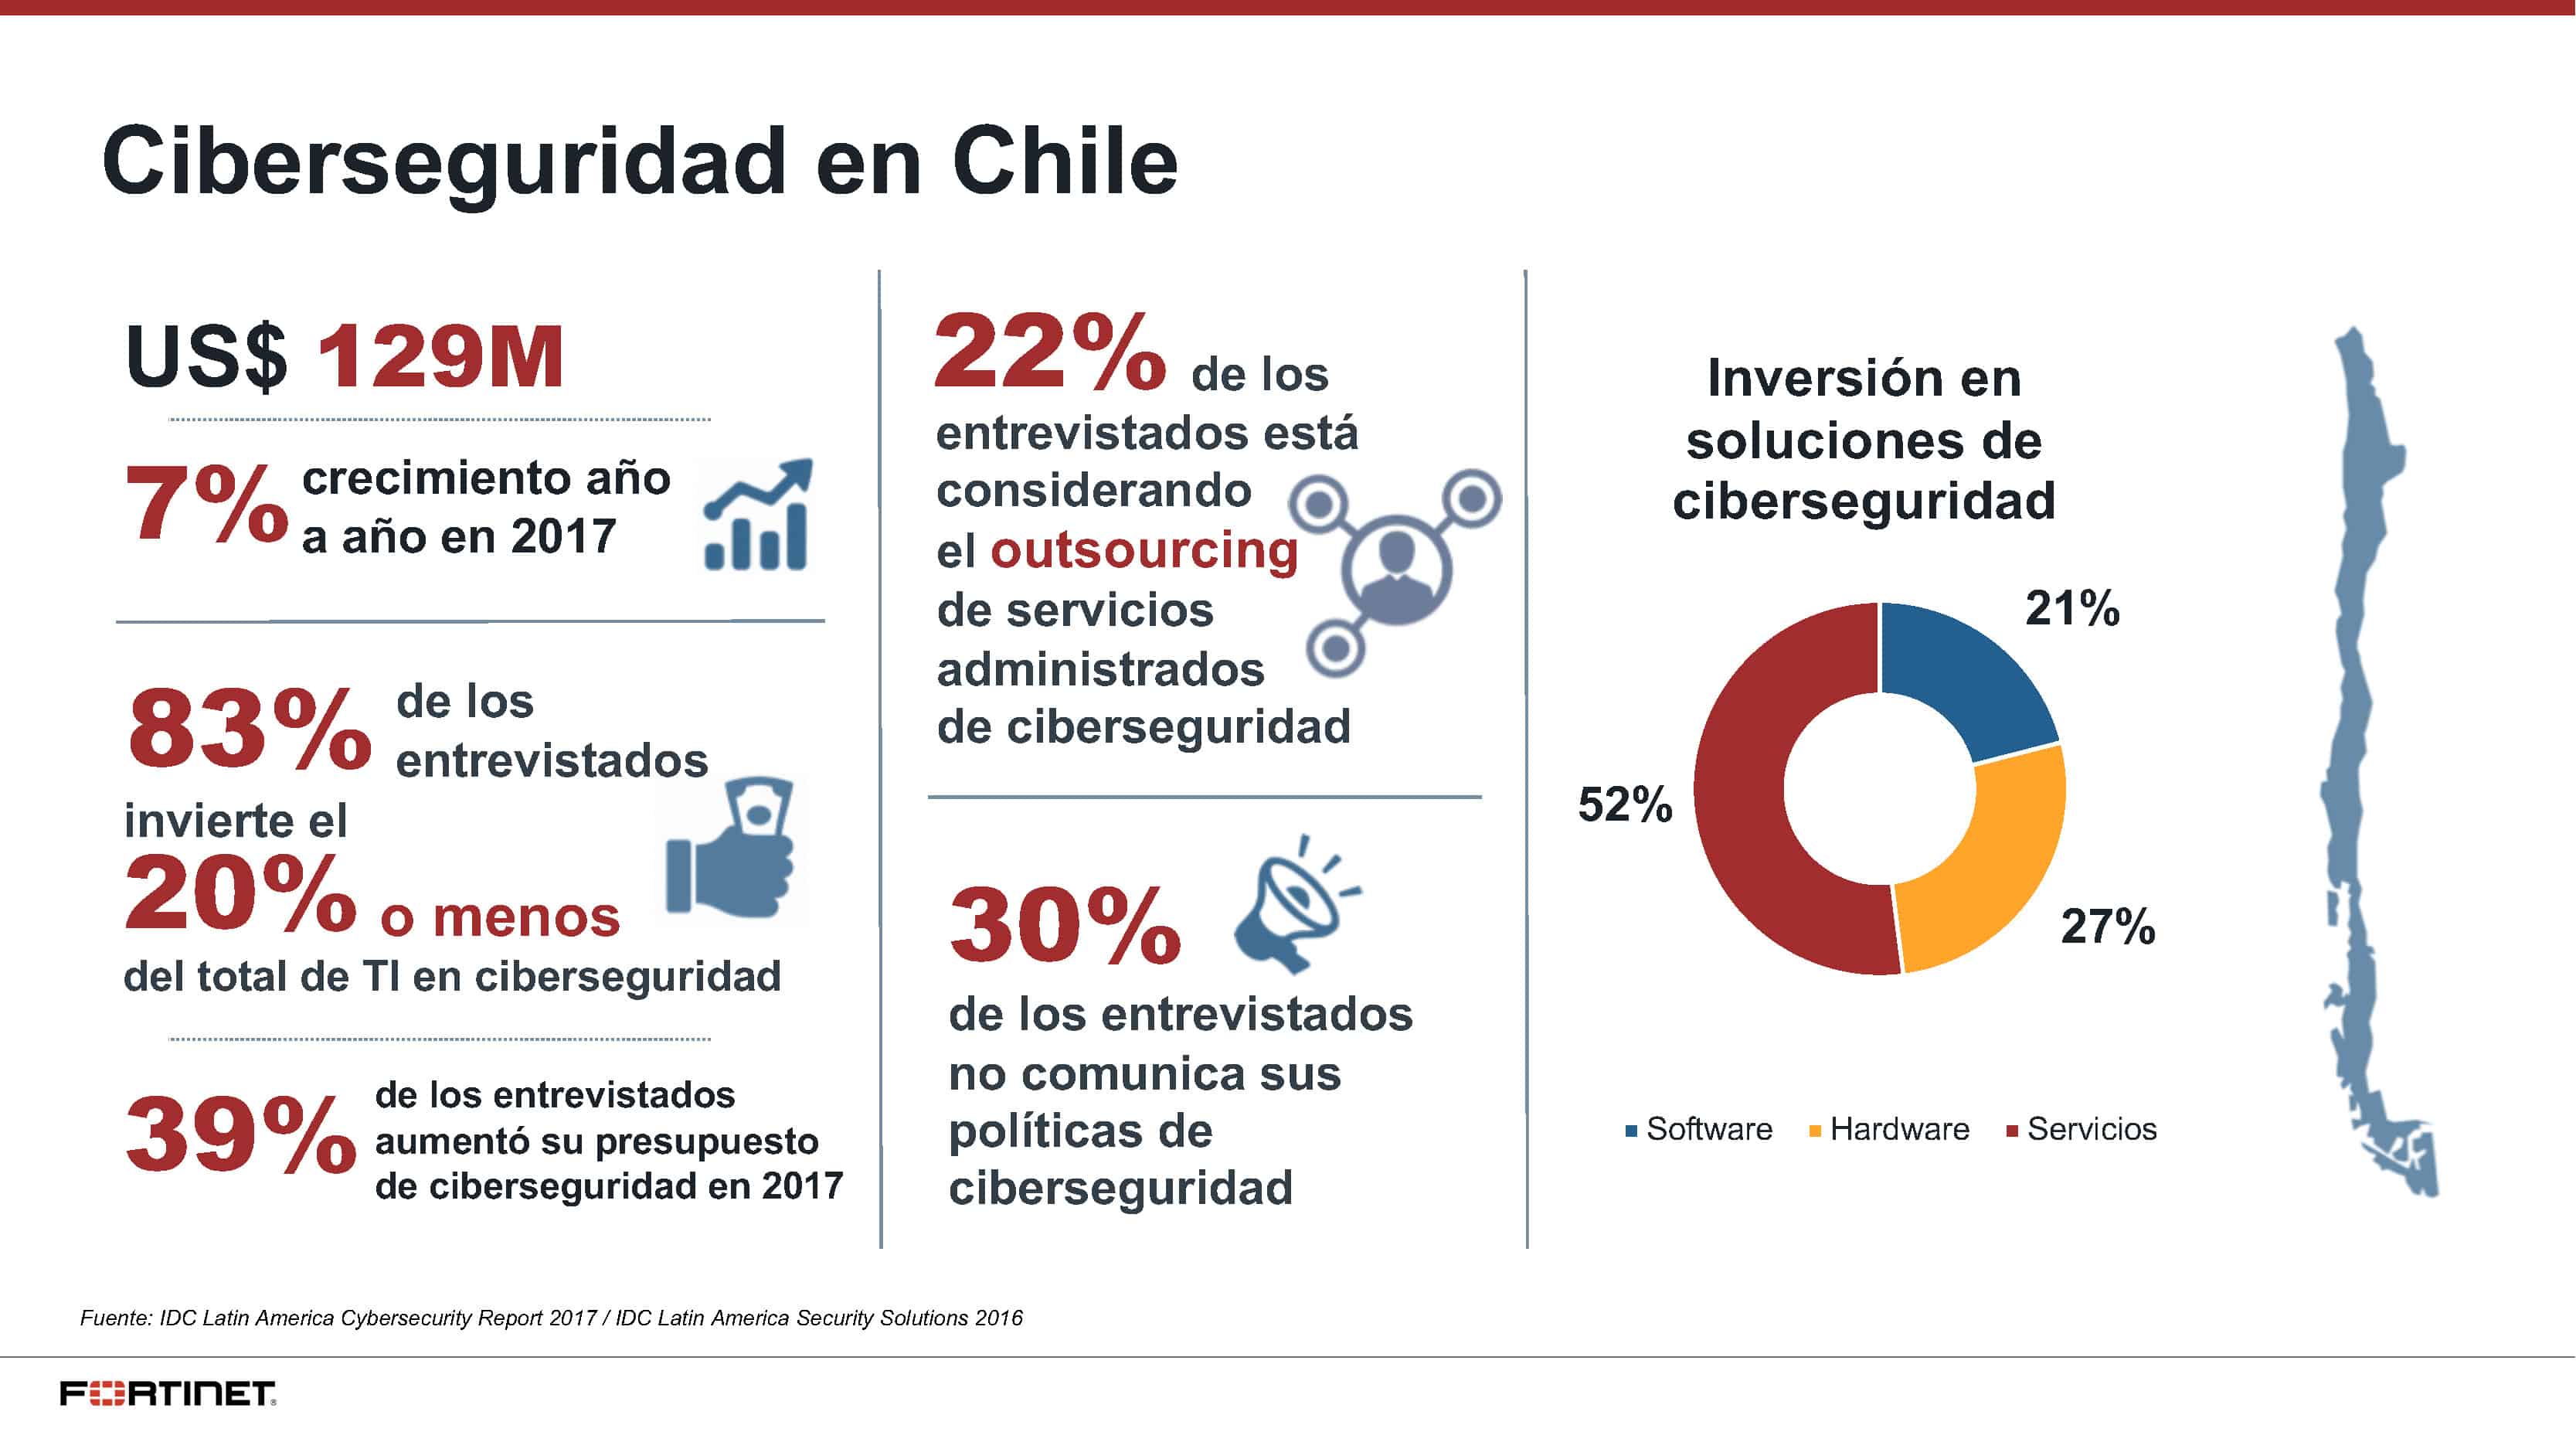 ¿Cuánto invierte Chile en Ciberseguridad?